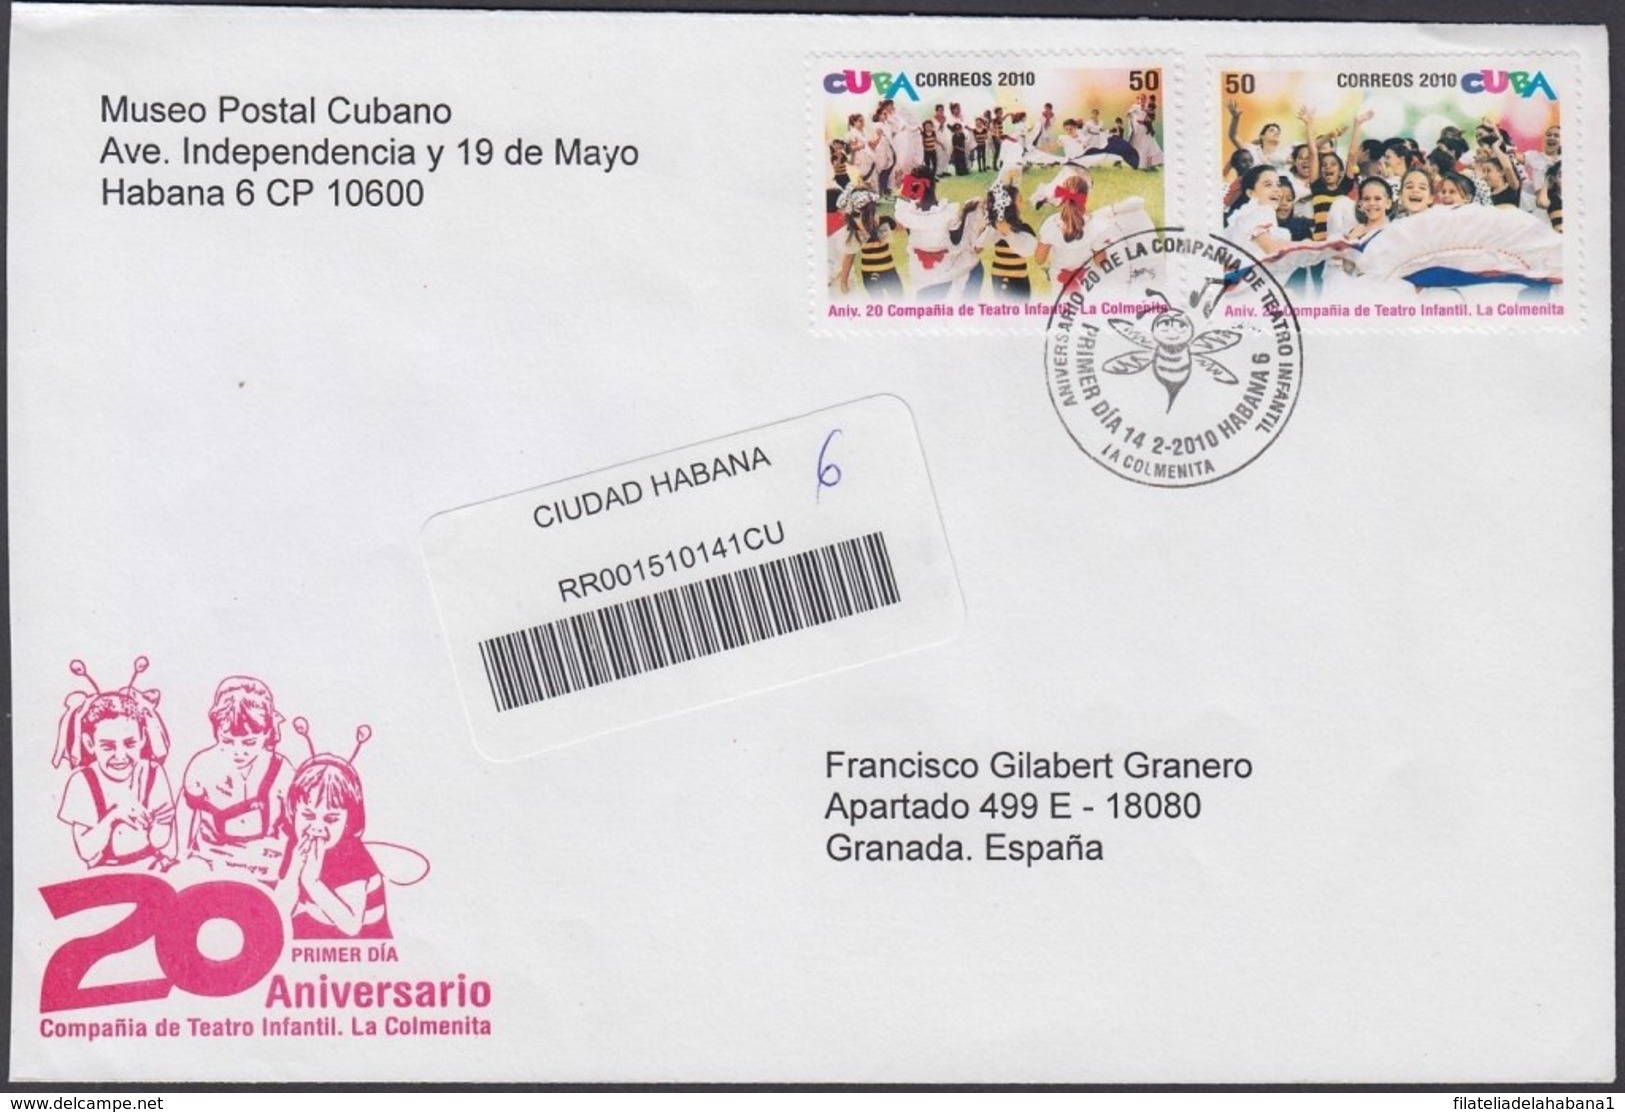 2010-FDC-63 CUBA FDC 2010. REGISTERED COVER TO SPAIN. COMPAÑIA TEATRO LA COLMENITA, CHILDREN THEATER. - FDC